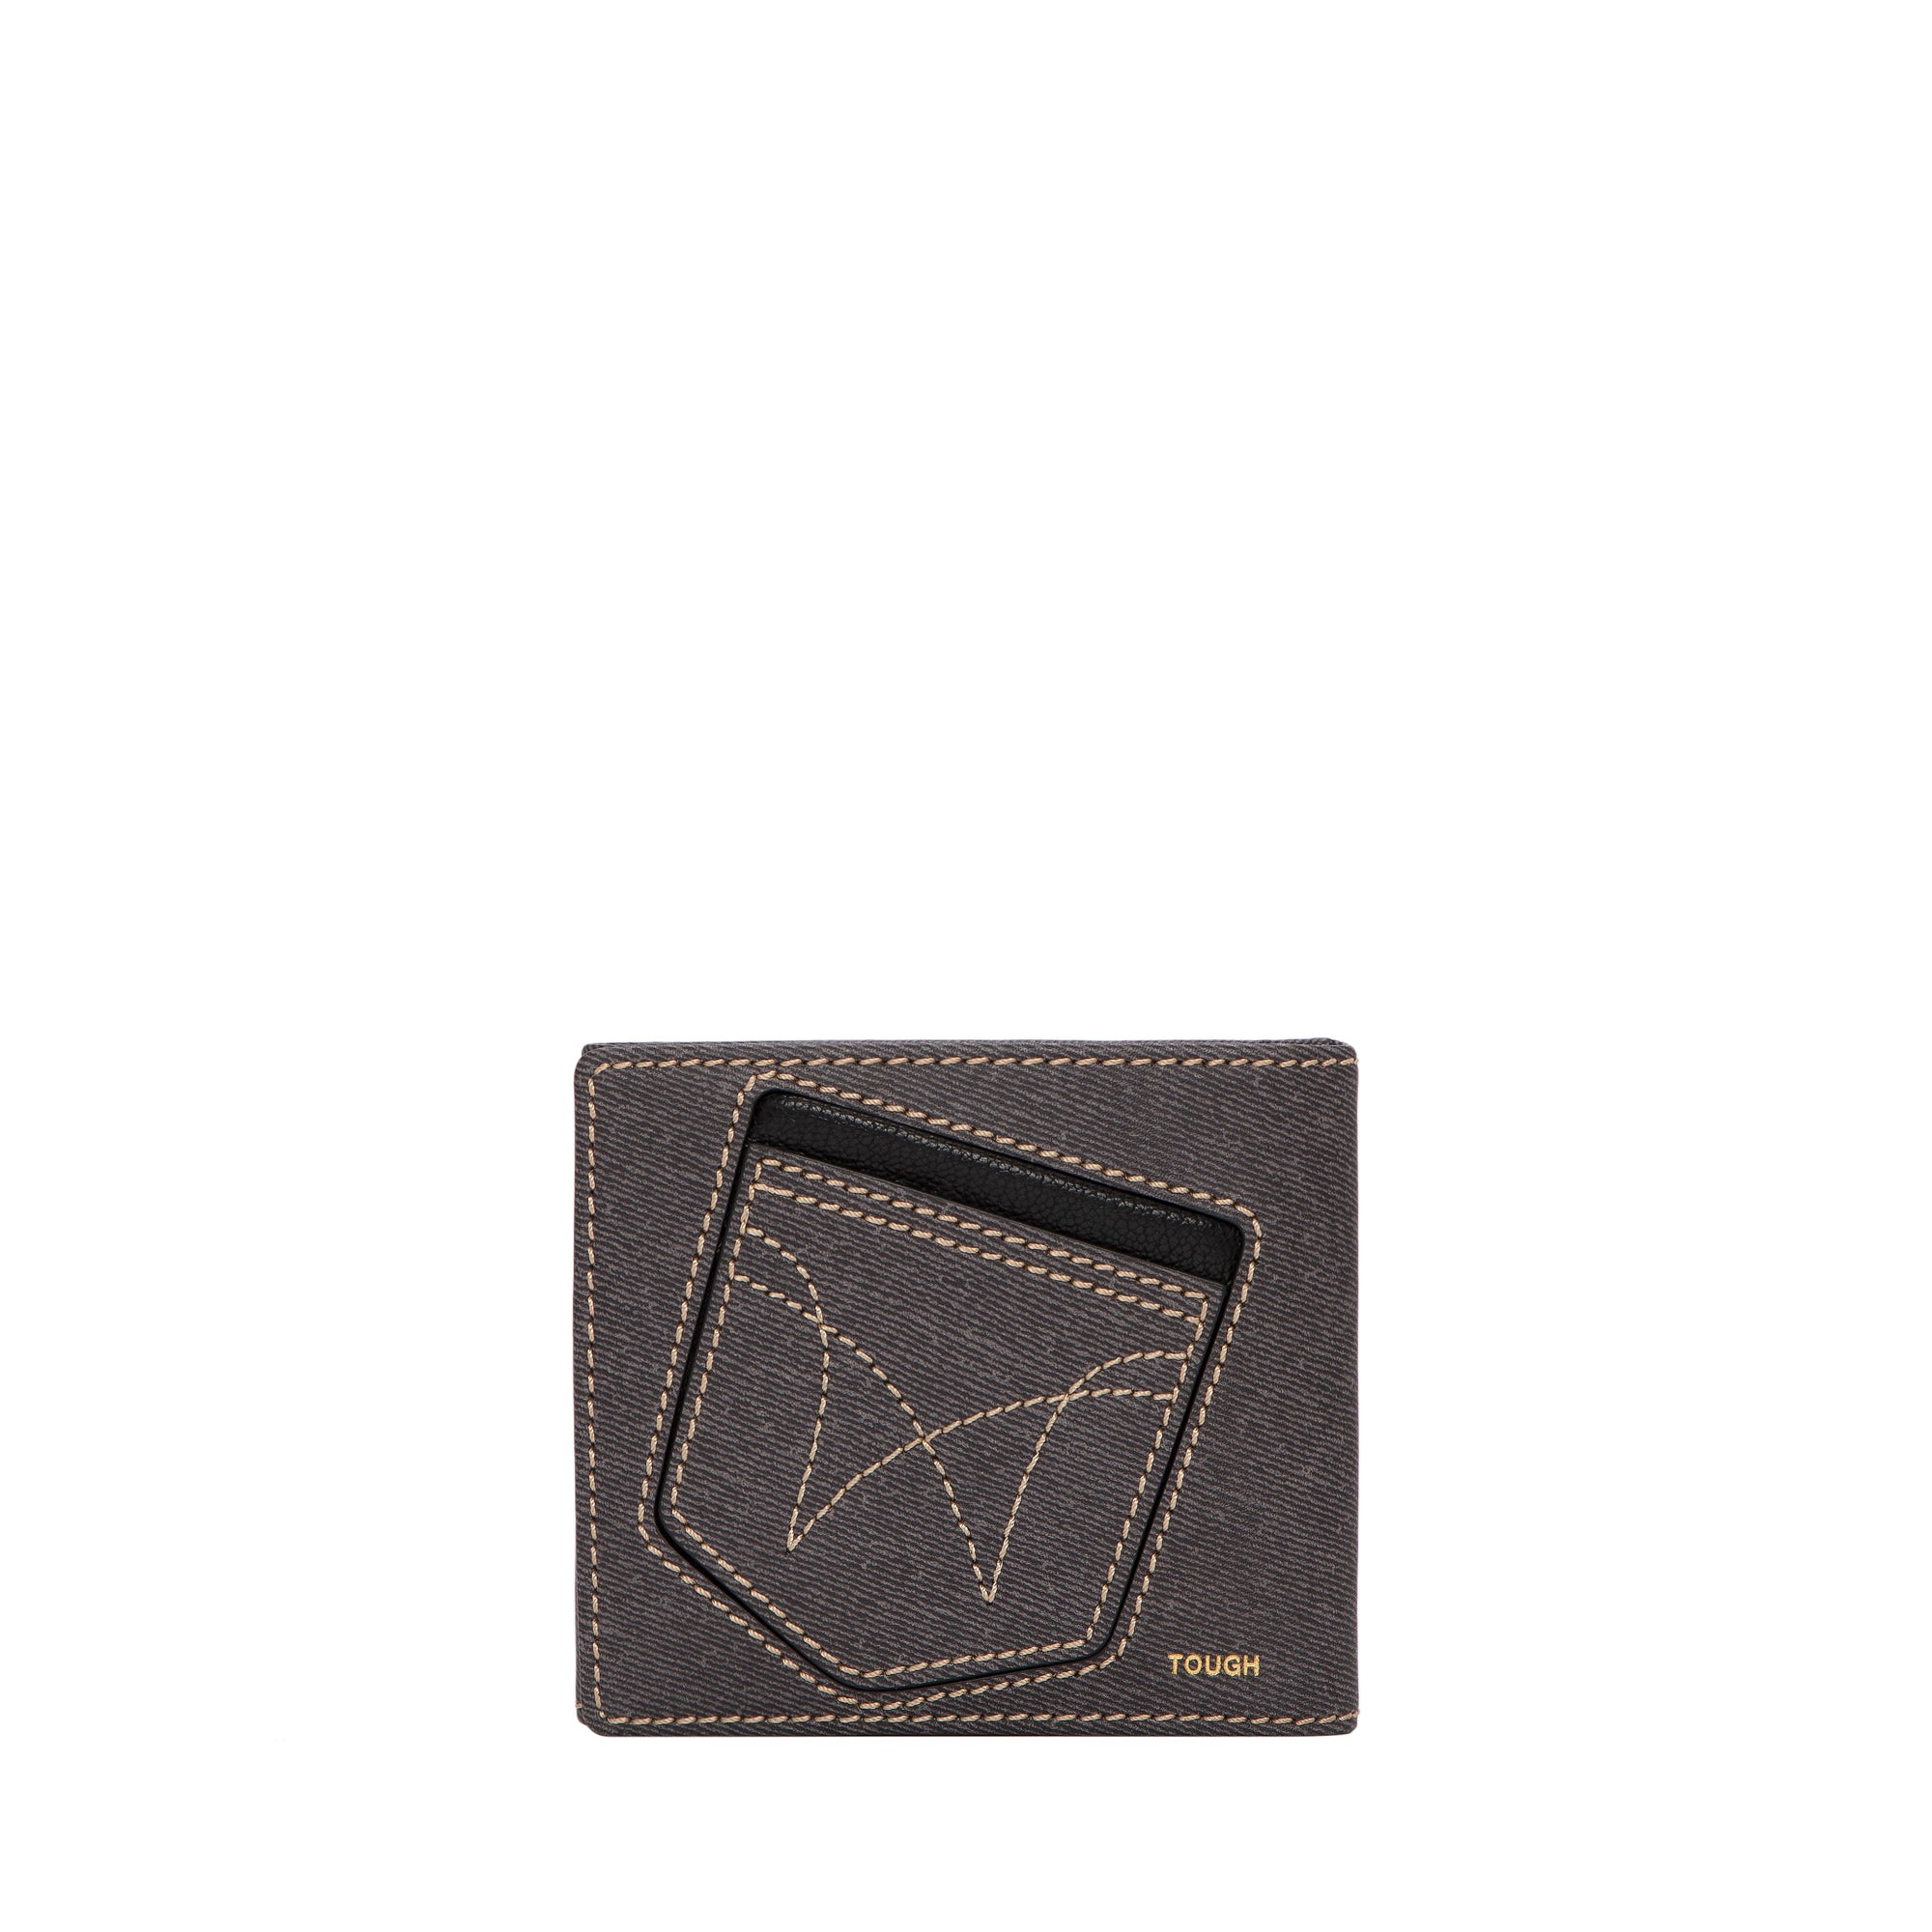 TOUGH JEANSMITH Pocket 短銀包 #TW122-001